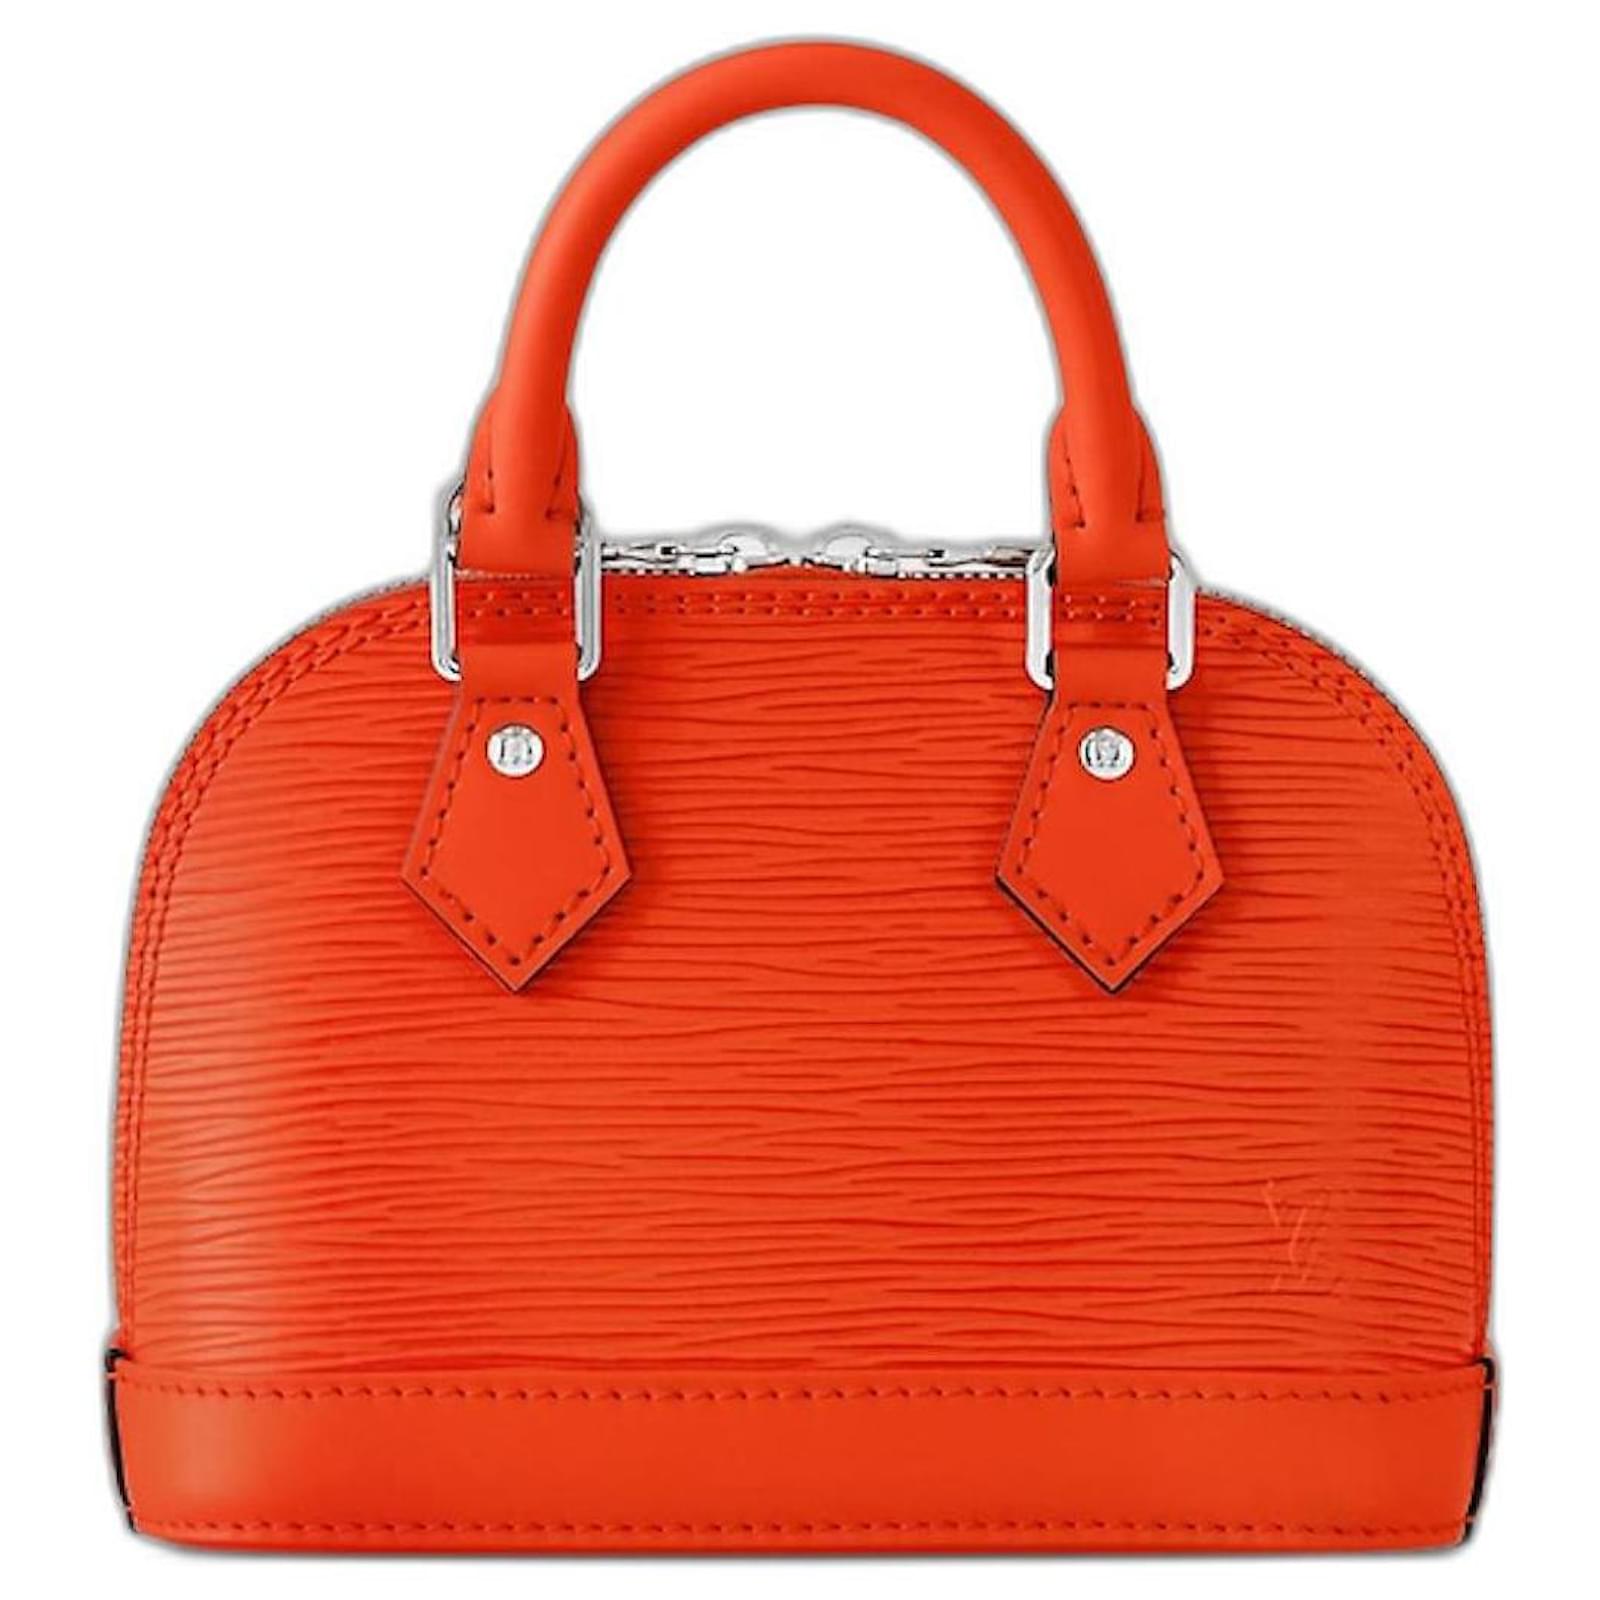 Louis Vuitton - Nano Alma Bag - Leather - Orange Minnesota - Women - Luxury